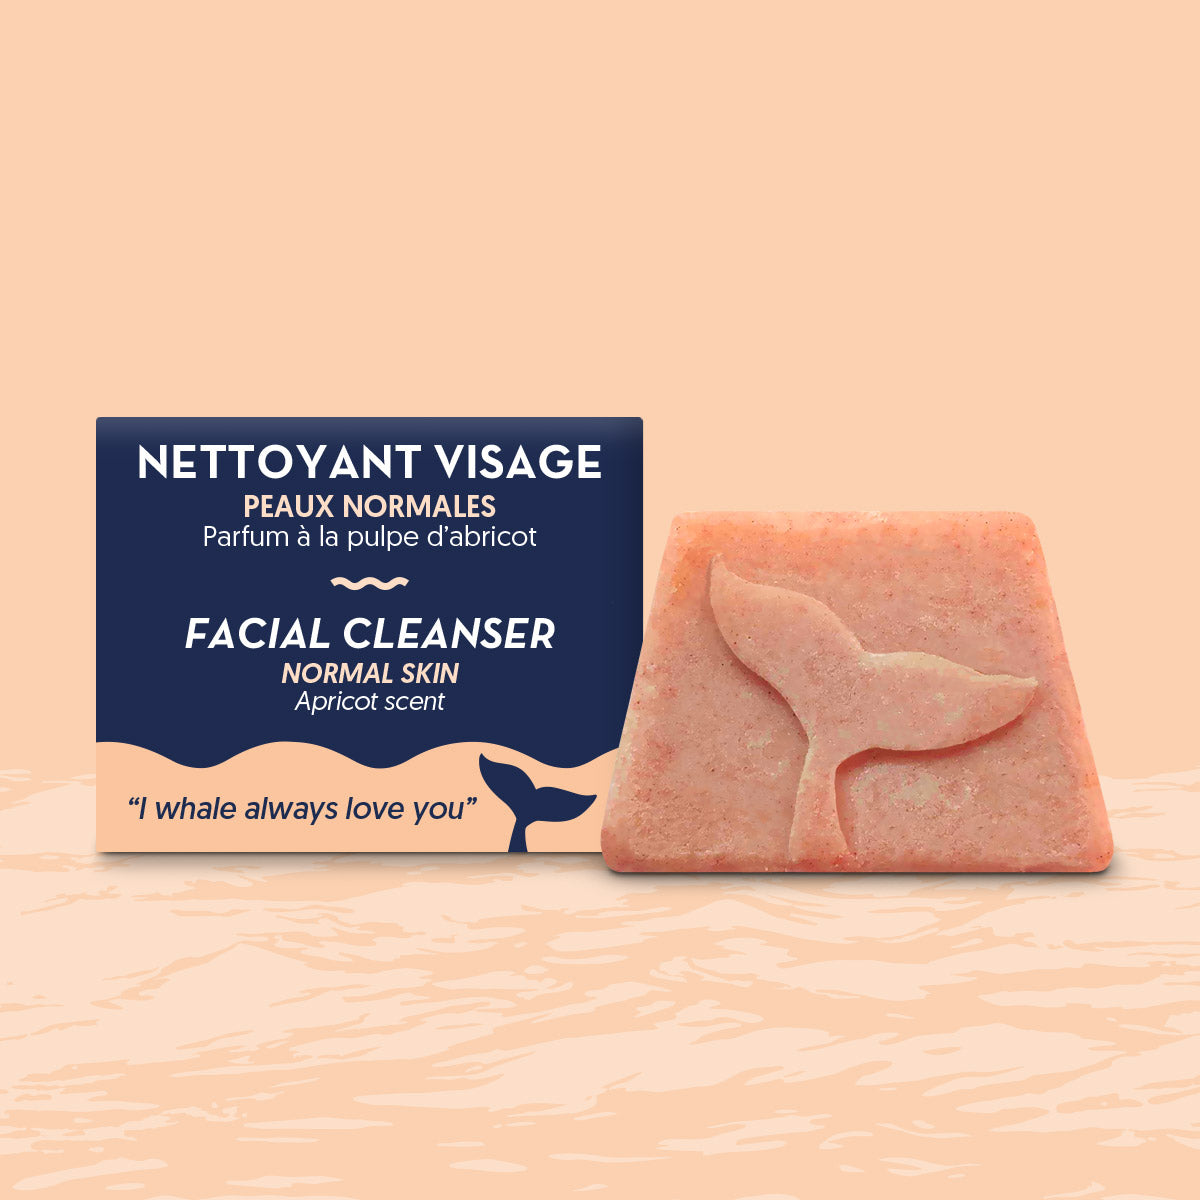 Nettoyant visage Peaux normales - Parfum à la pulpe d'abricot